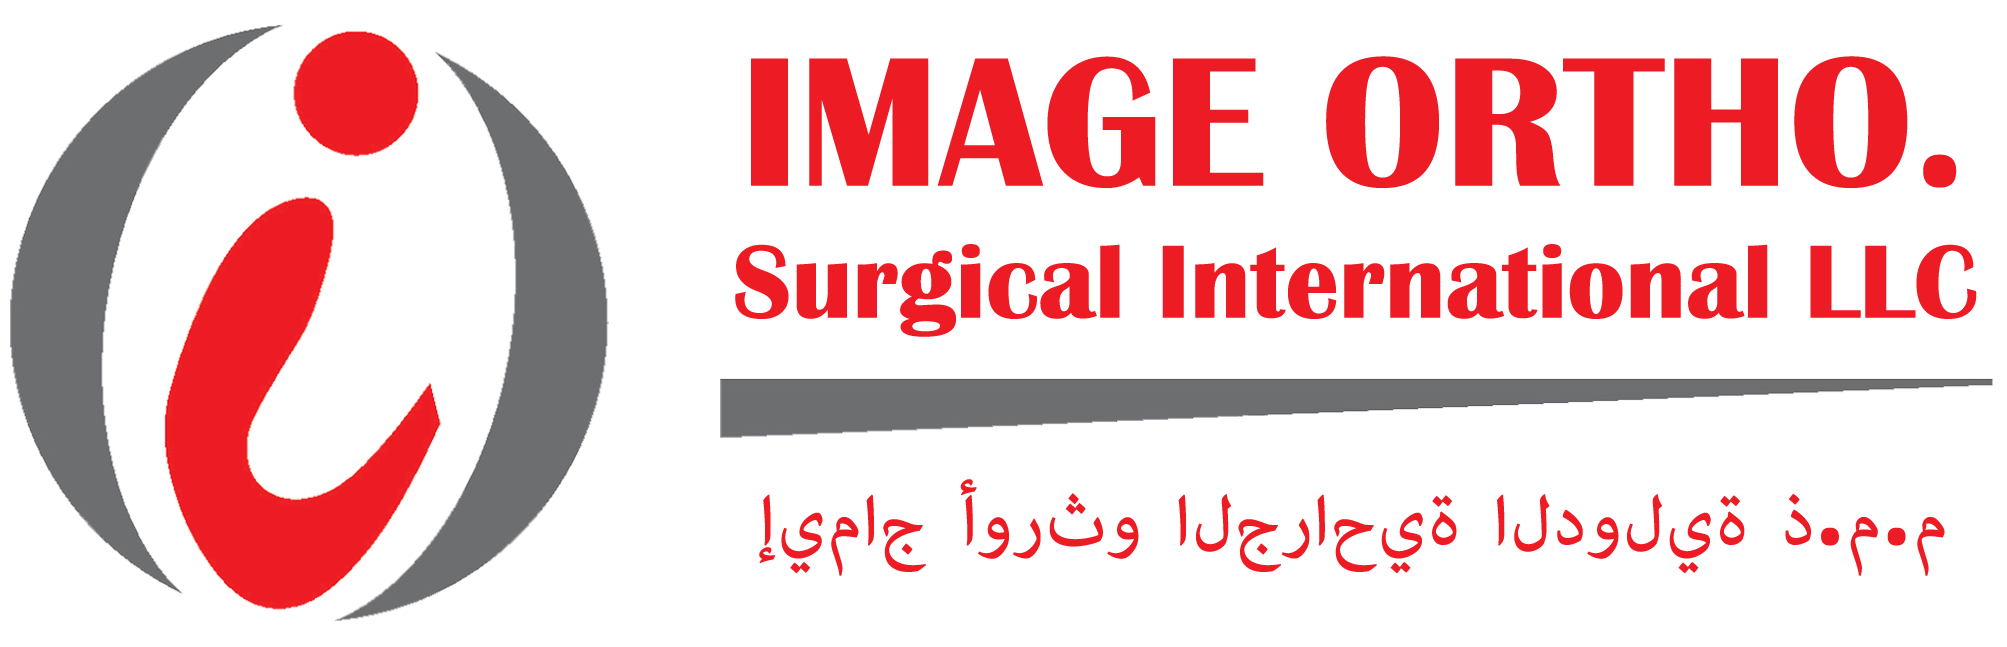 Image Ortho Surgical International LLC